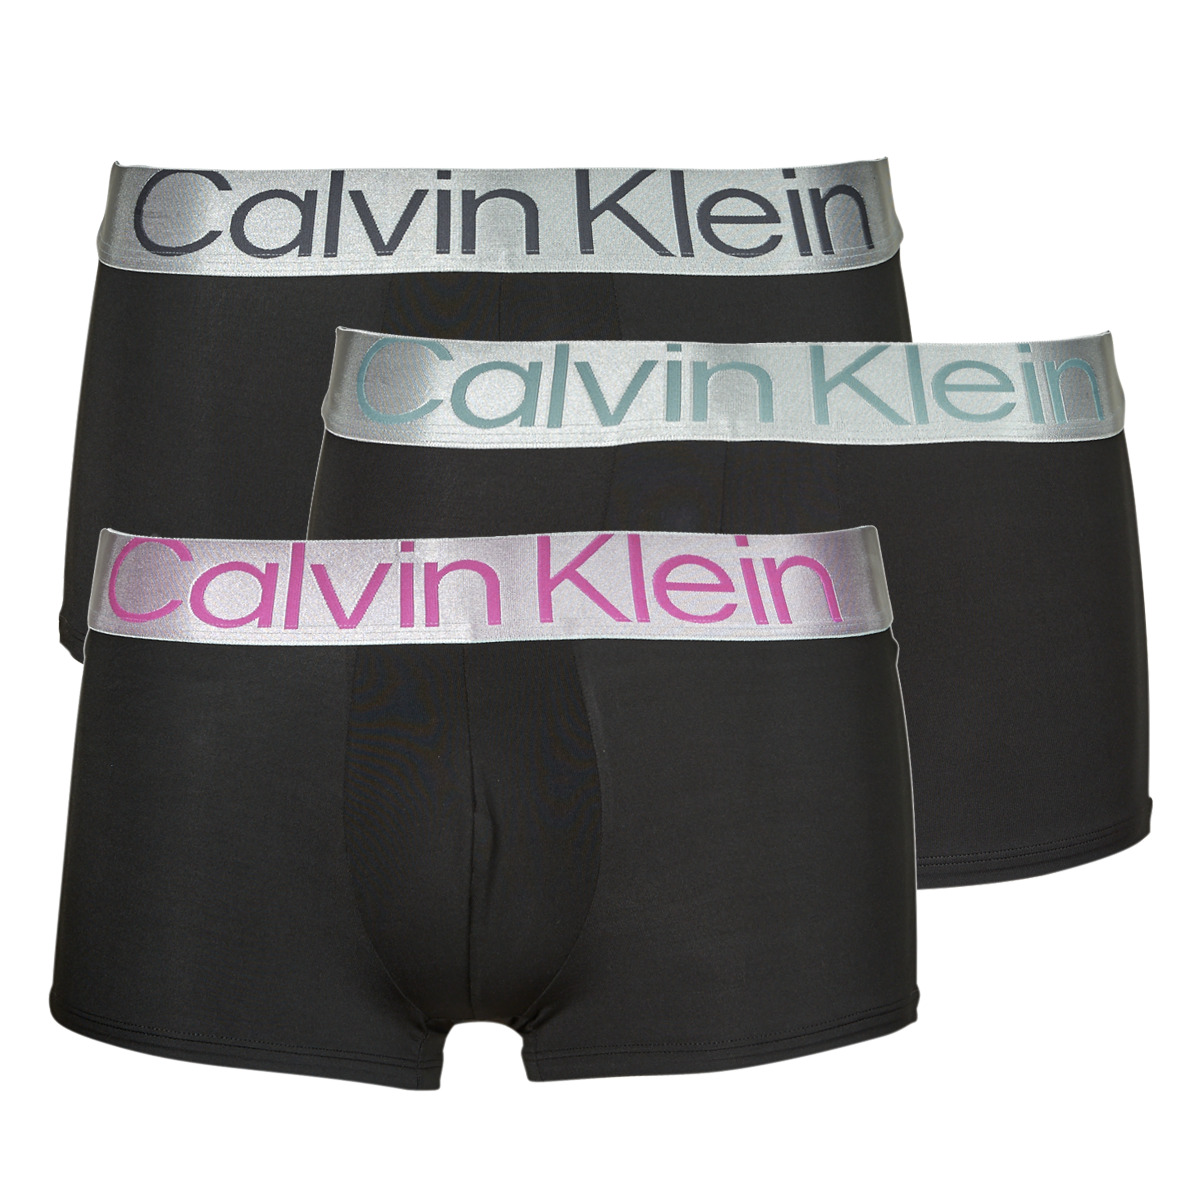 Calvin Klein Jeans Noir / Noir / Noir LOW RISE TRUNK X3 9Rt12DqA